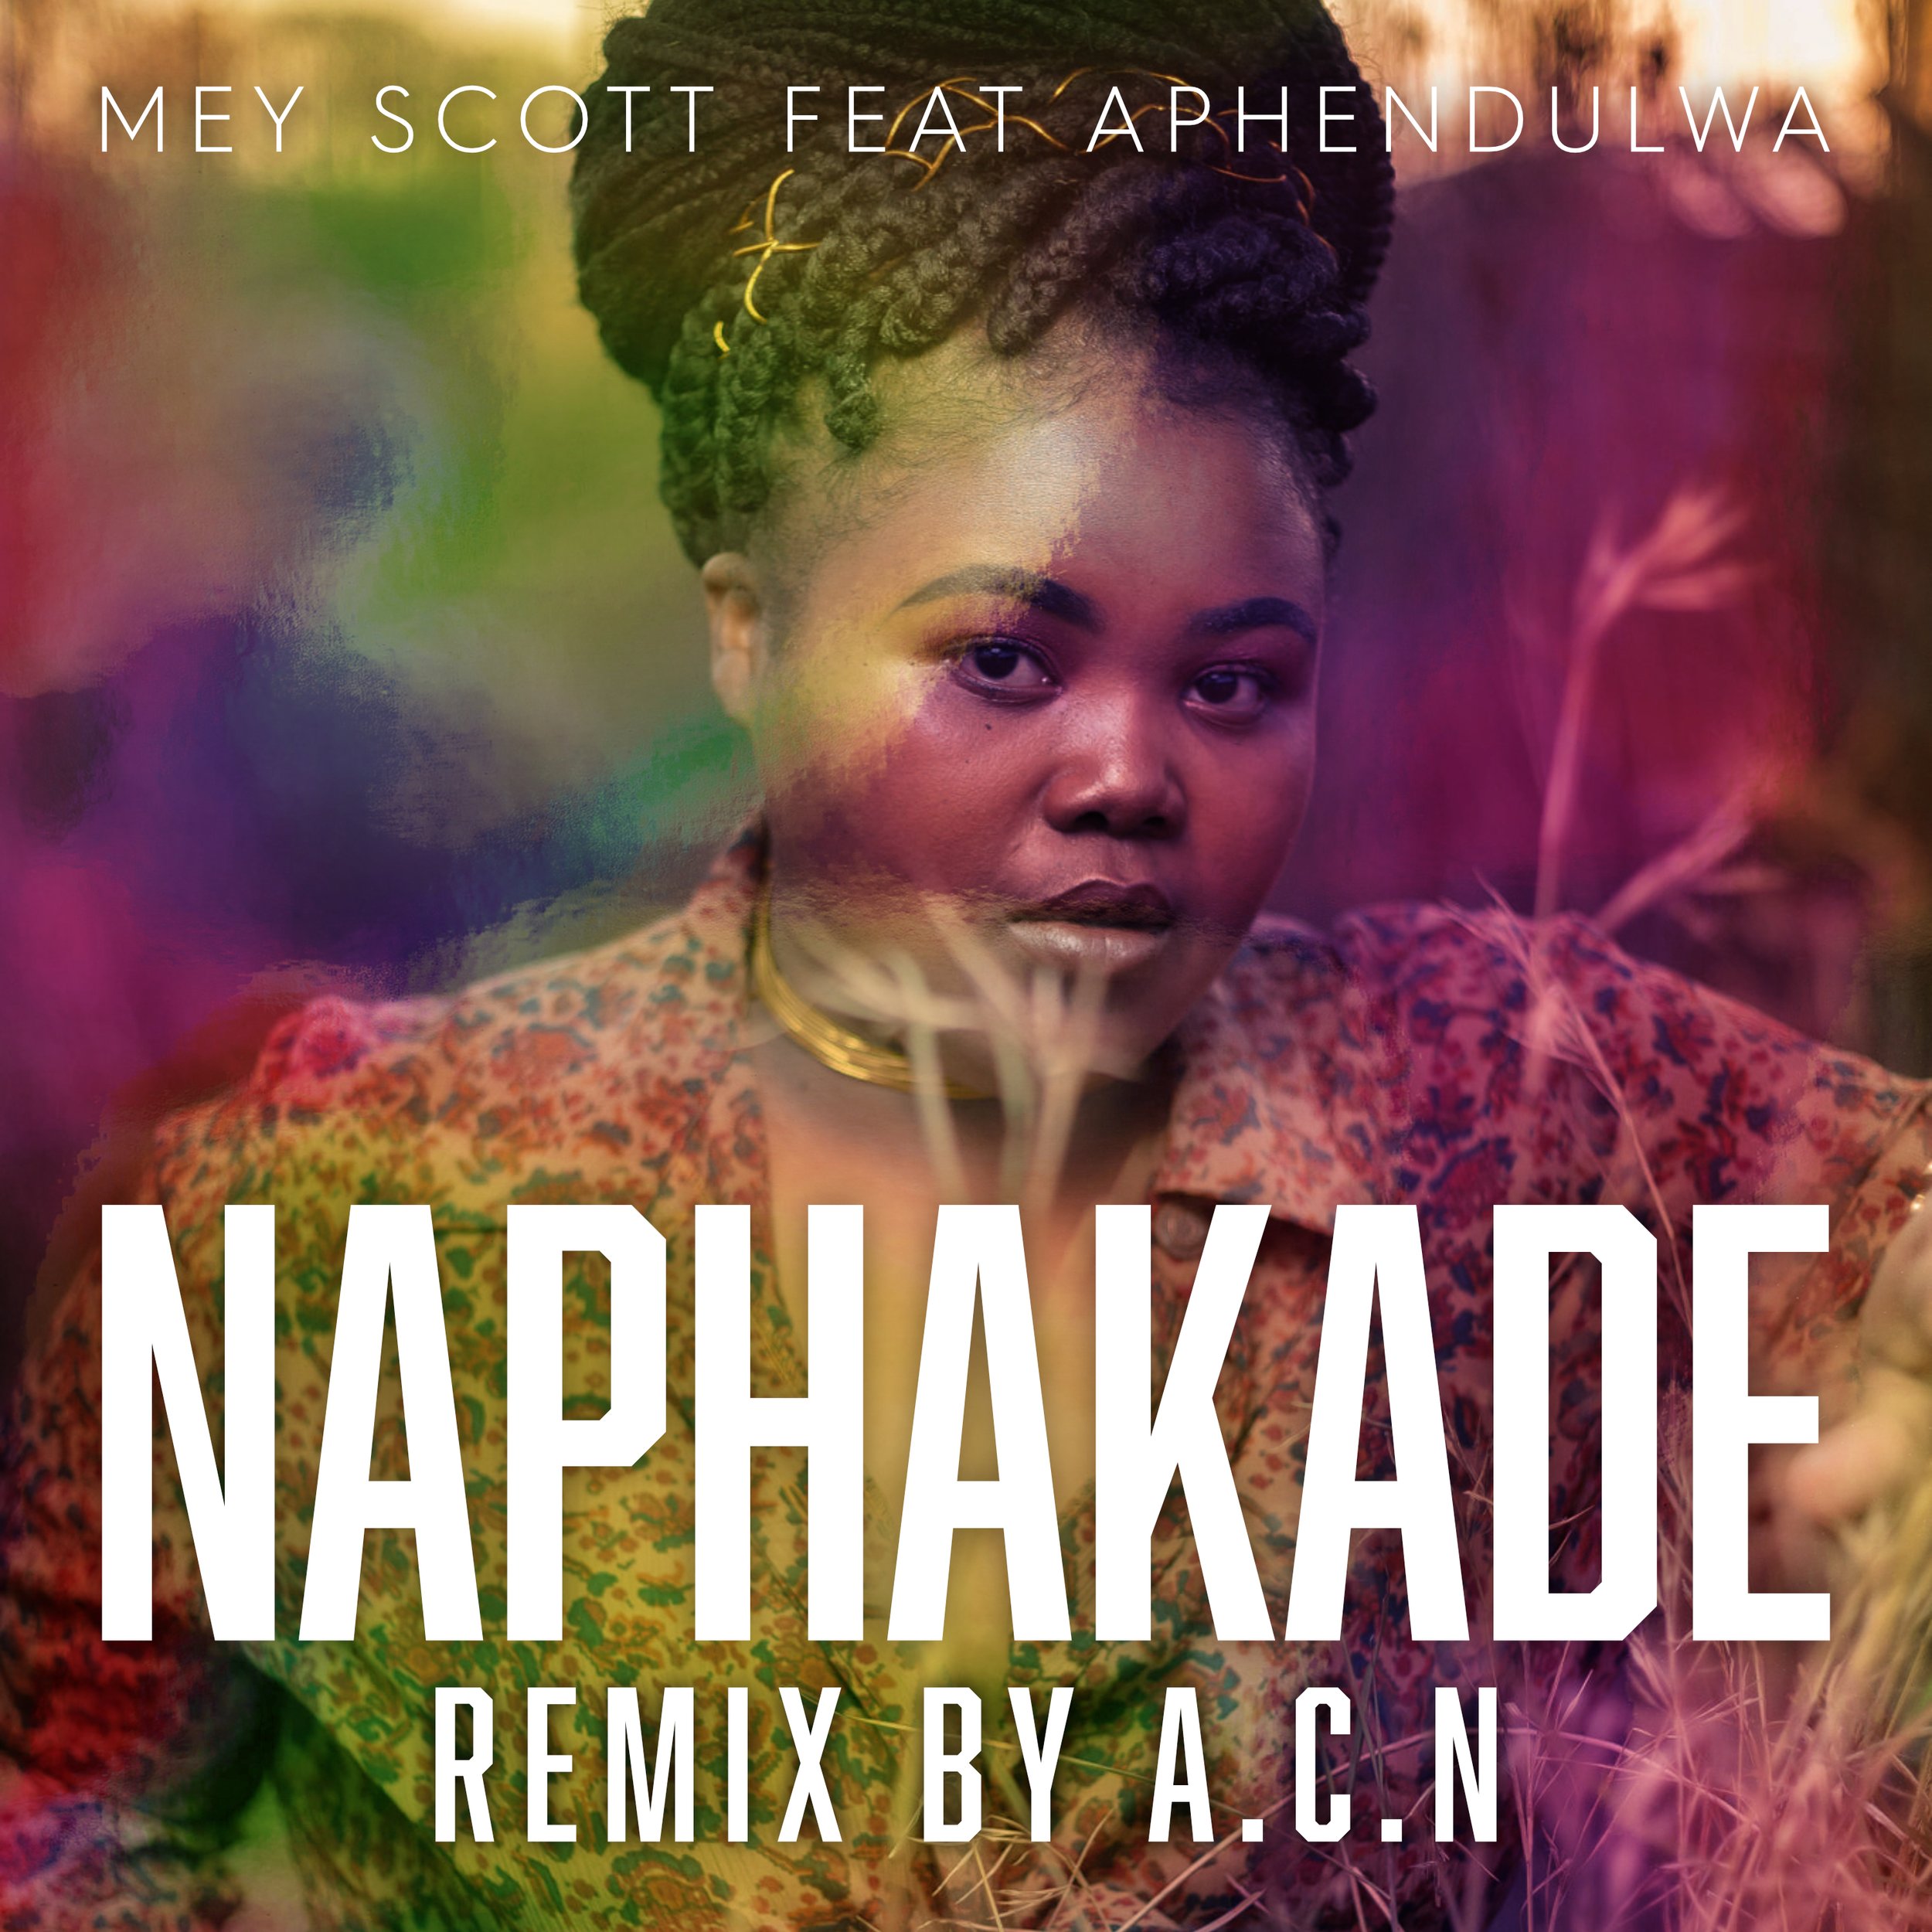 Mey Scott ft Aphendulwa - Naphakade (ACN Remix) - Artwork (1).jpg